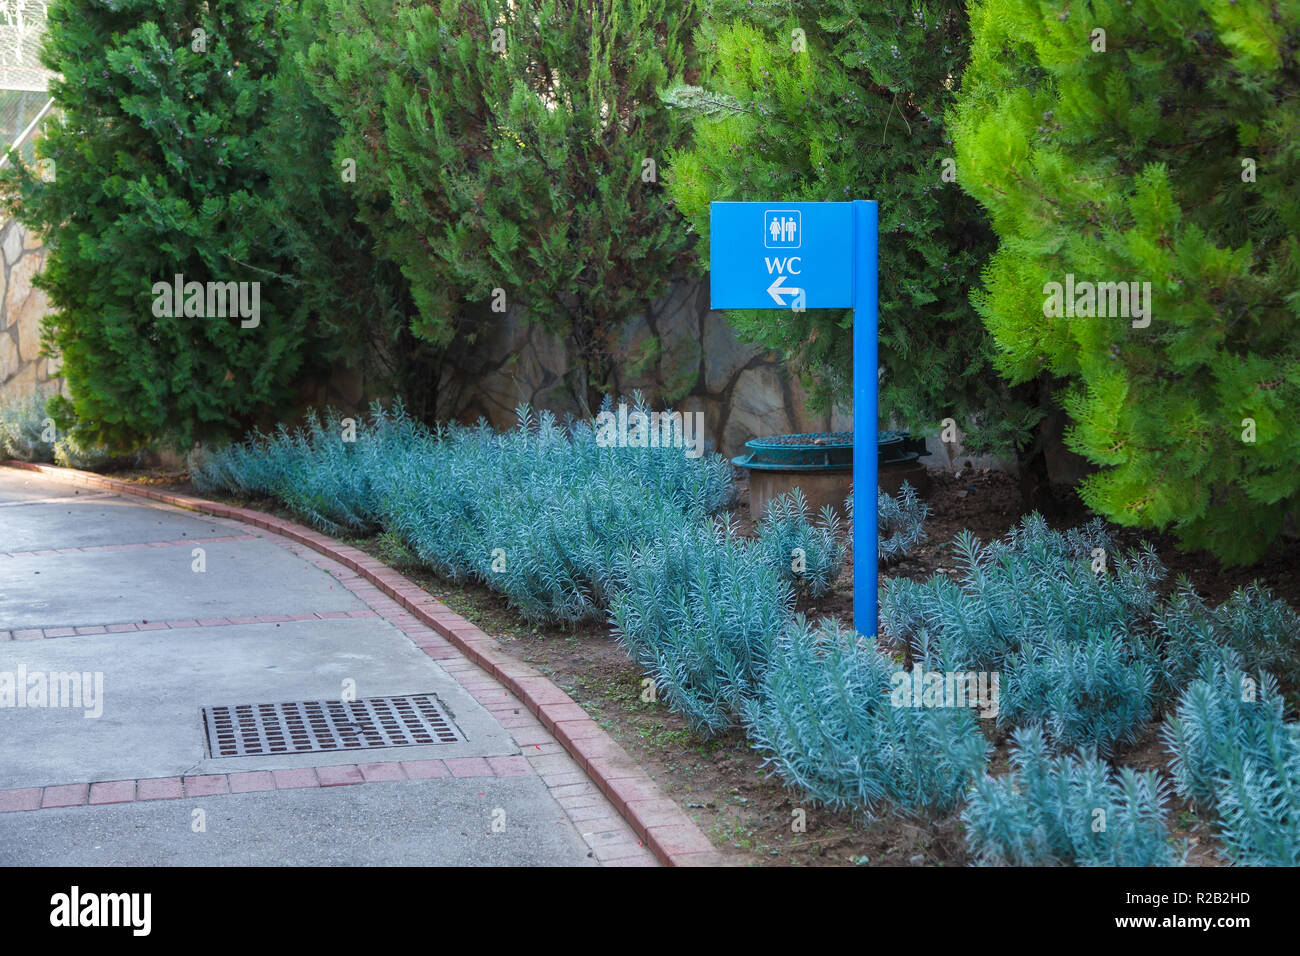 Puntero azul en dirección al baño en el fondo natural de plantas, flores, árboles con hojas verdes en el parque. Antecedentes Foto de stock